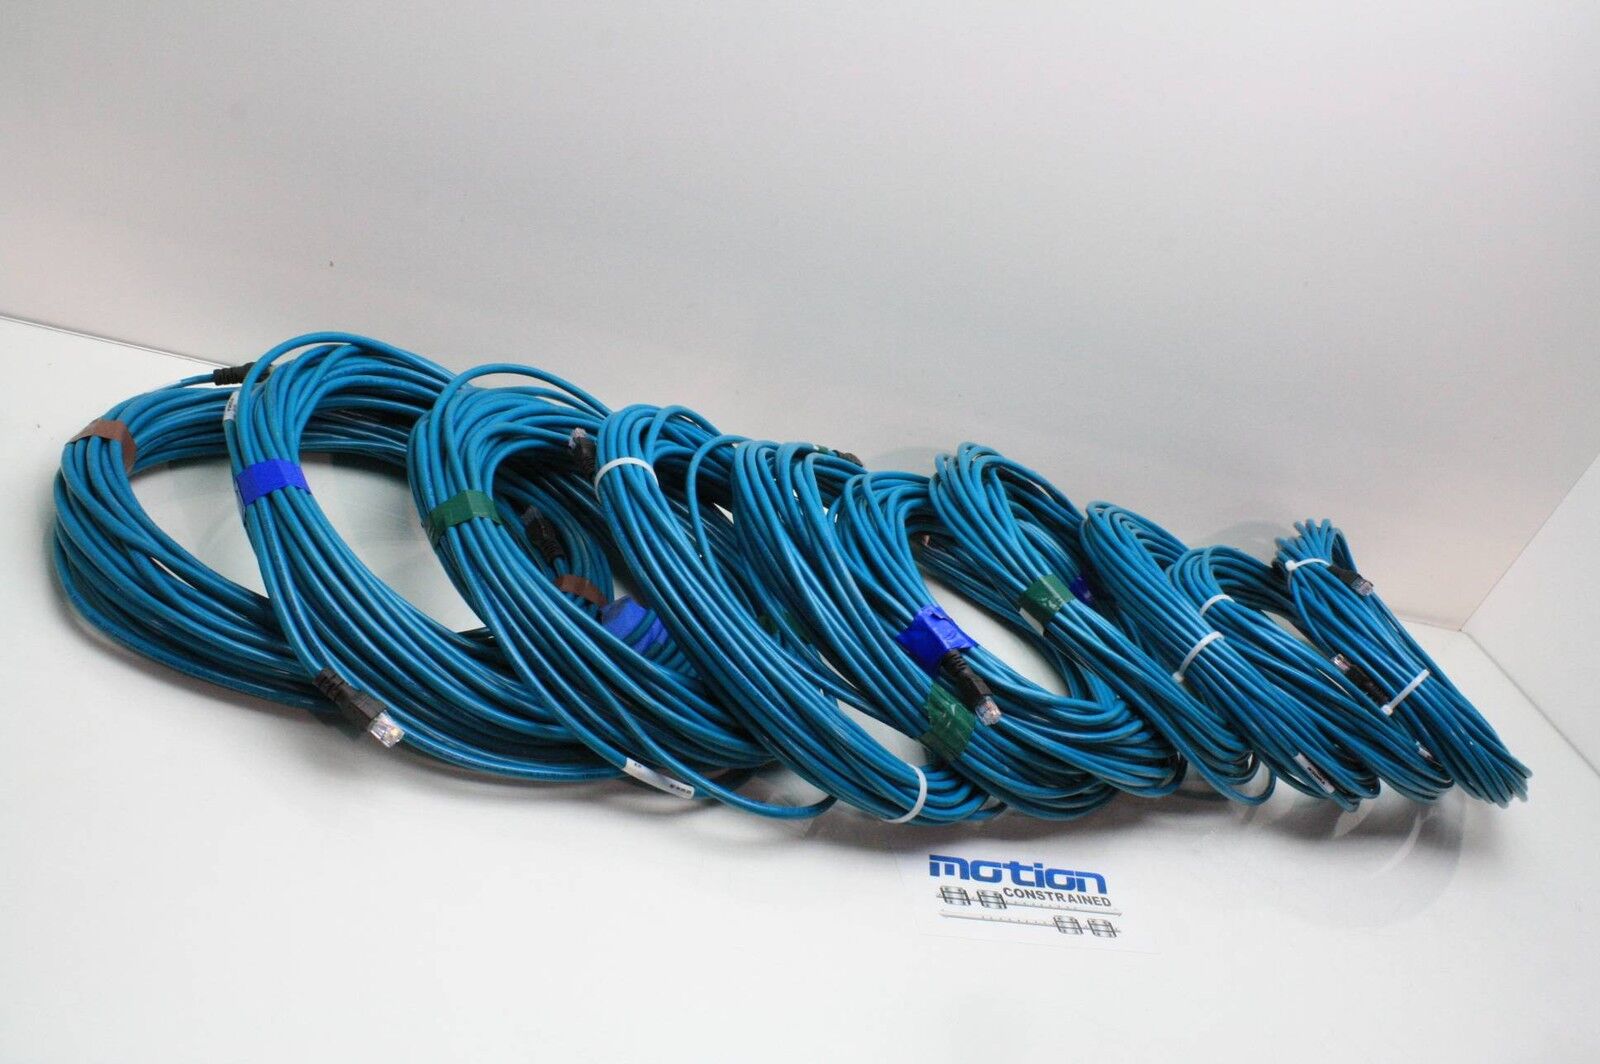 Turck U-18014 Turck RJ45 Ethernet Cable 20 Meter 4 Wire (RJ45 RJ45